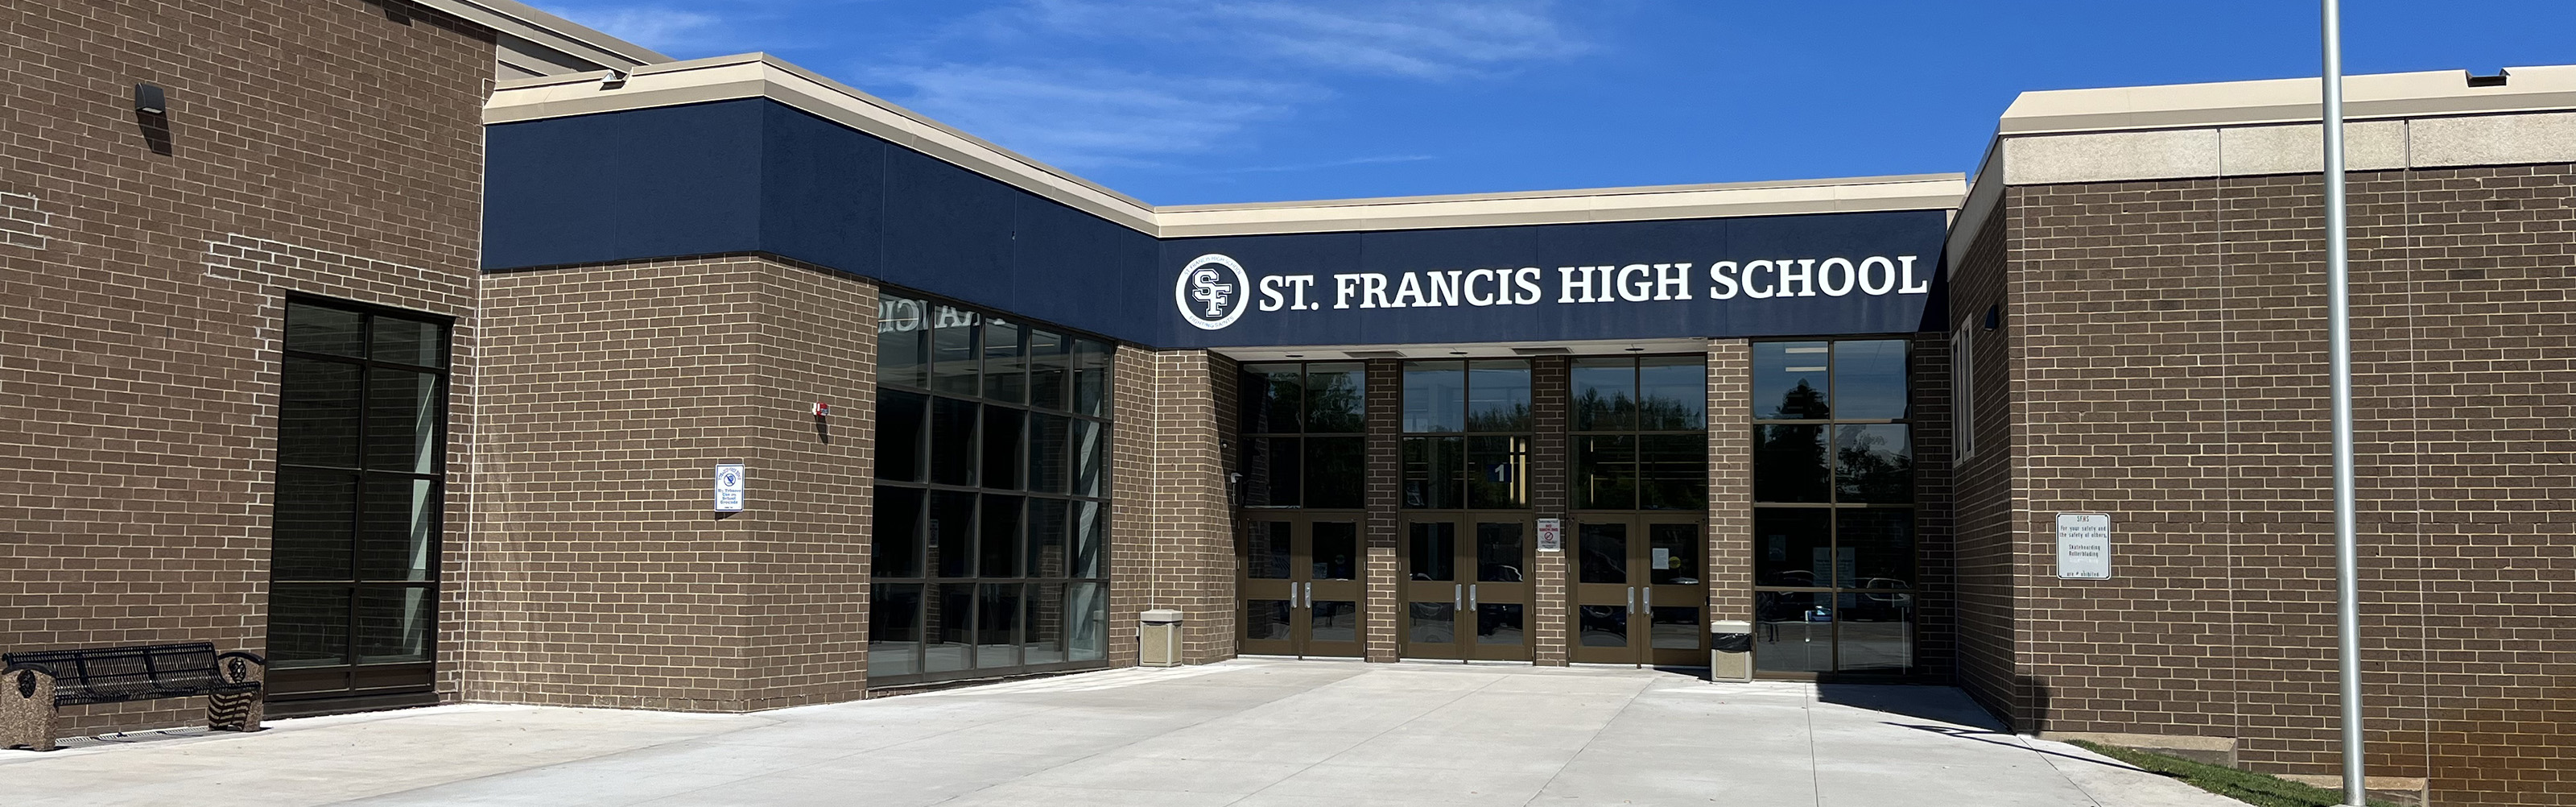 Front Doors of St. Francis High School